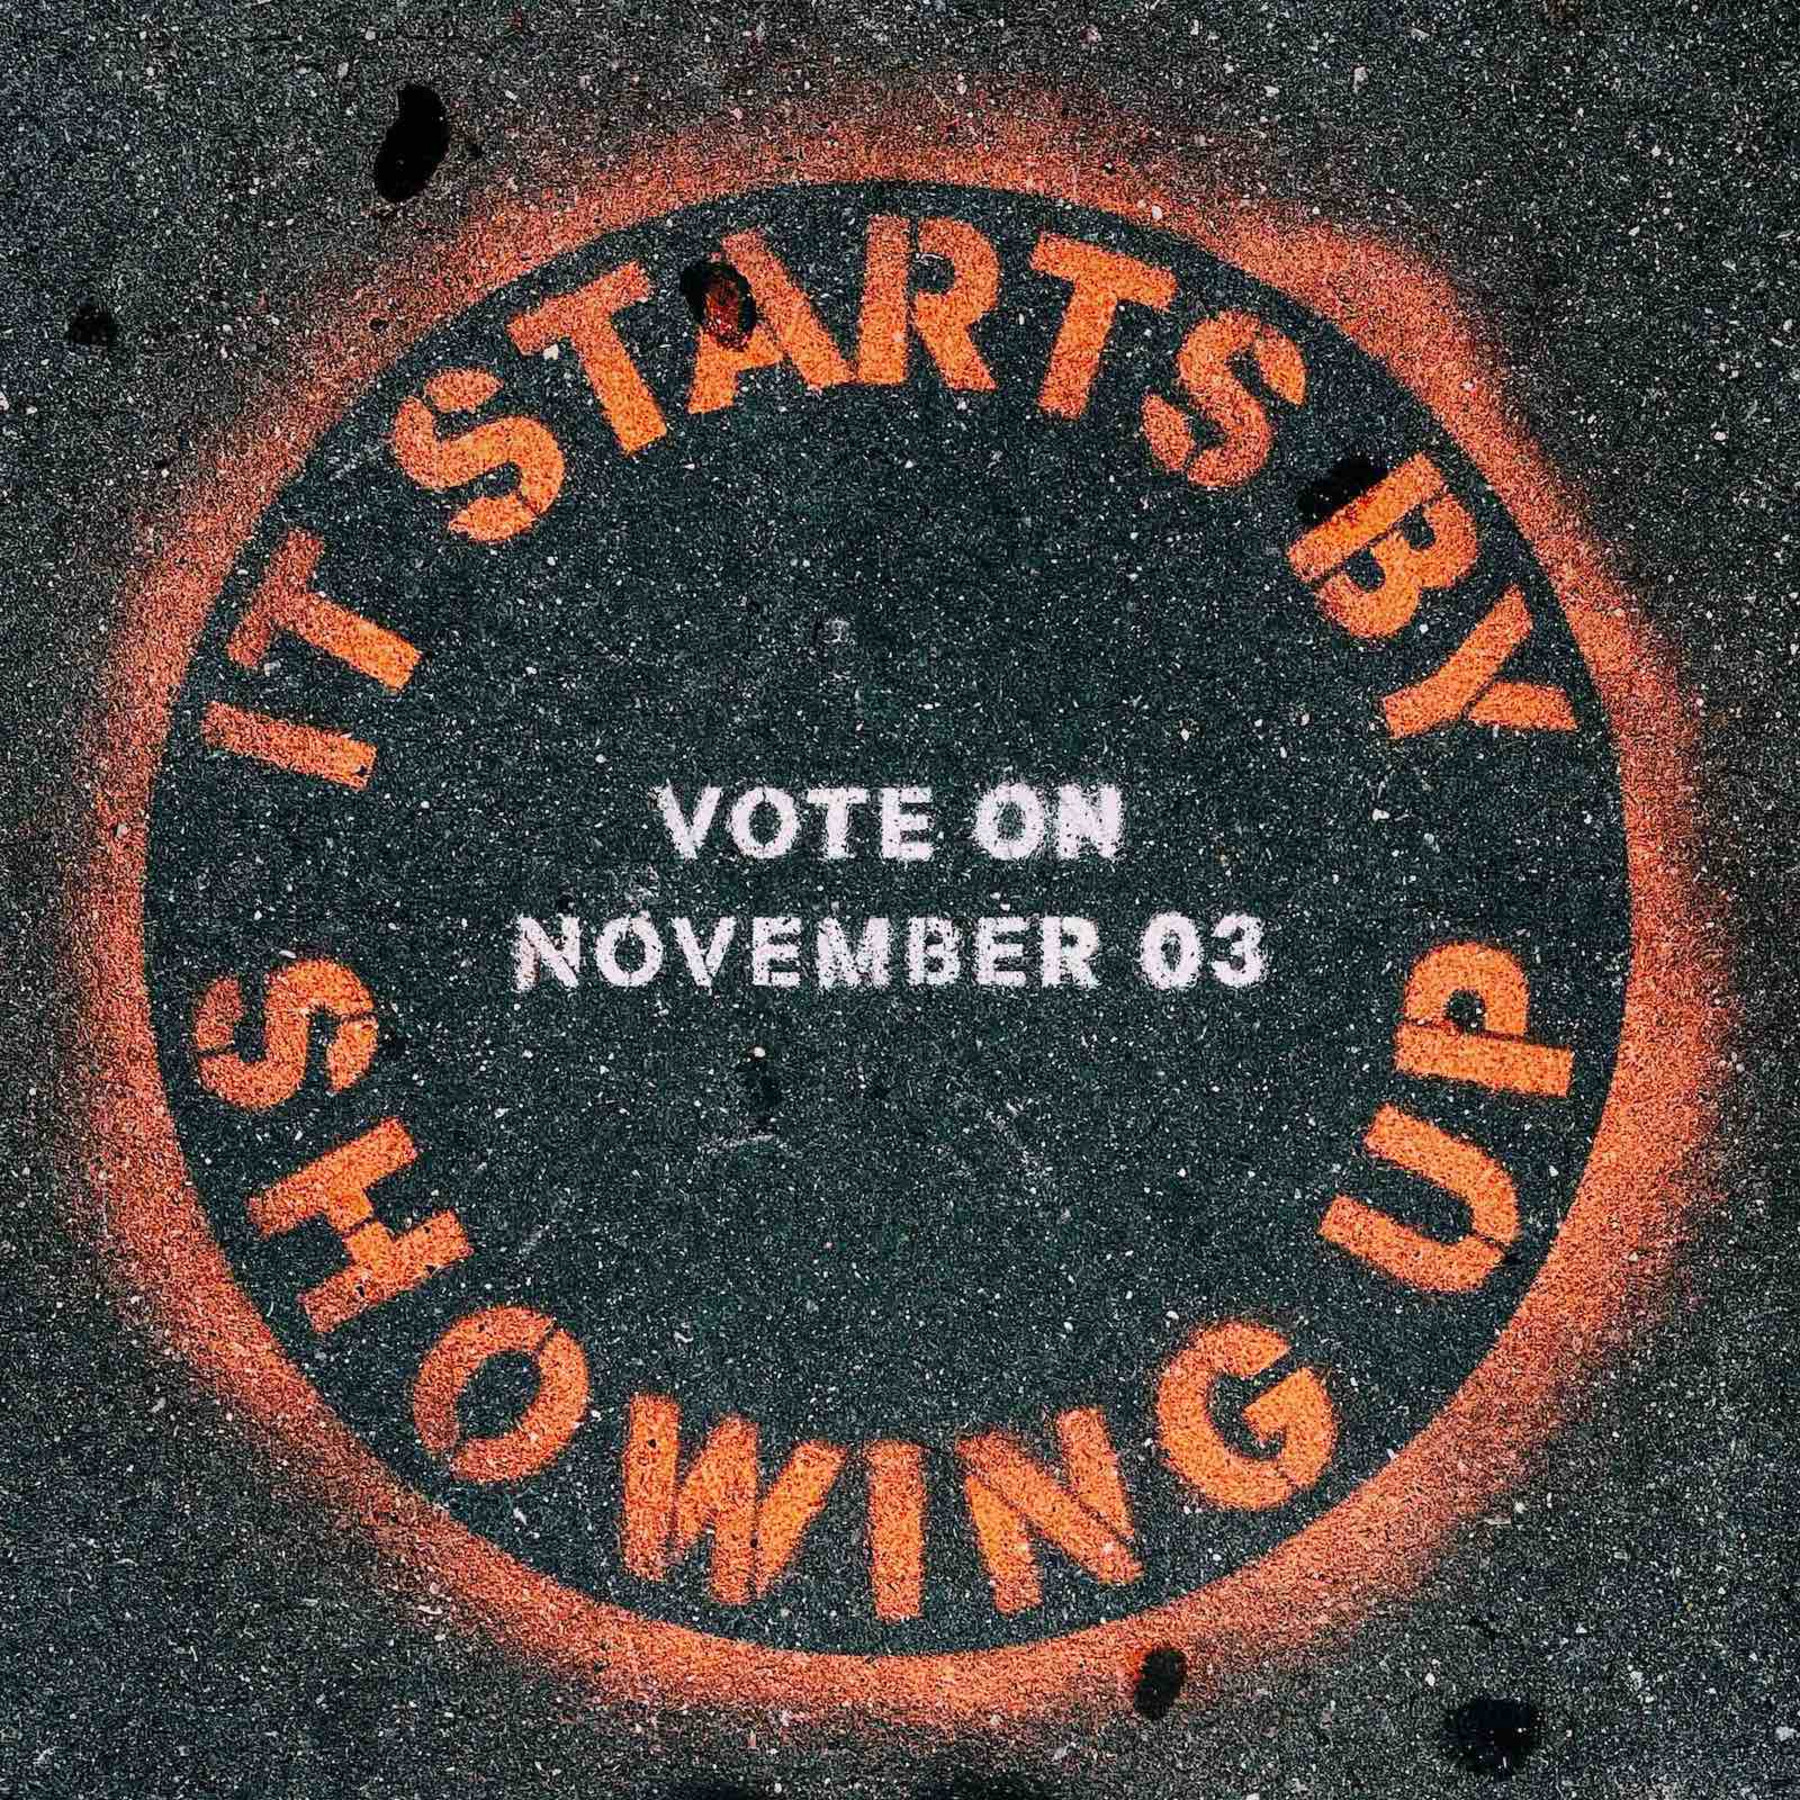 Eine gesprayte Botschaft auf dem Boden: „It starts by showing up. Vote on November 03“